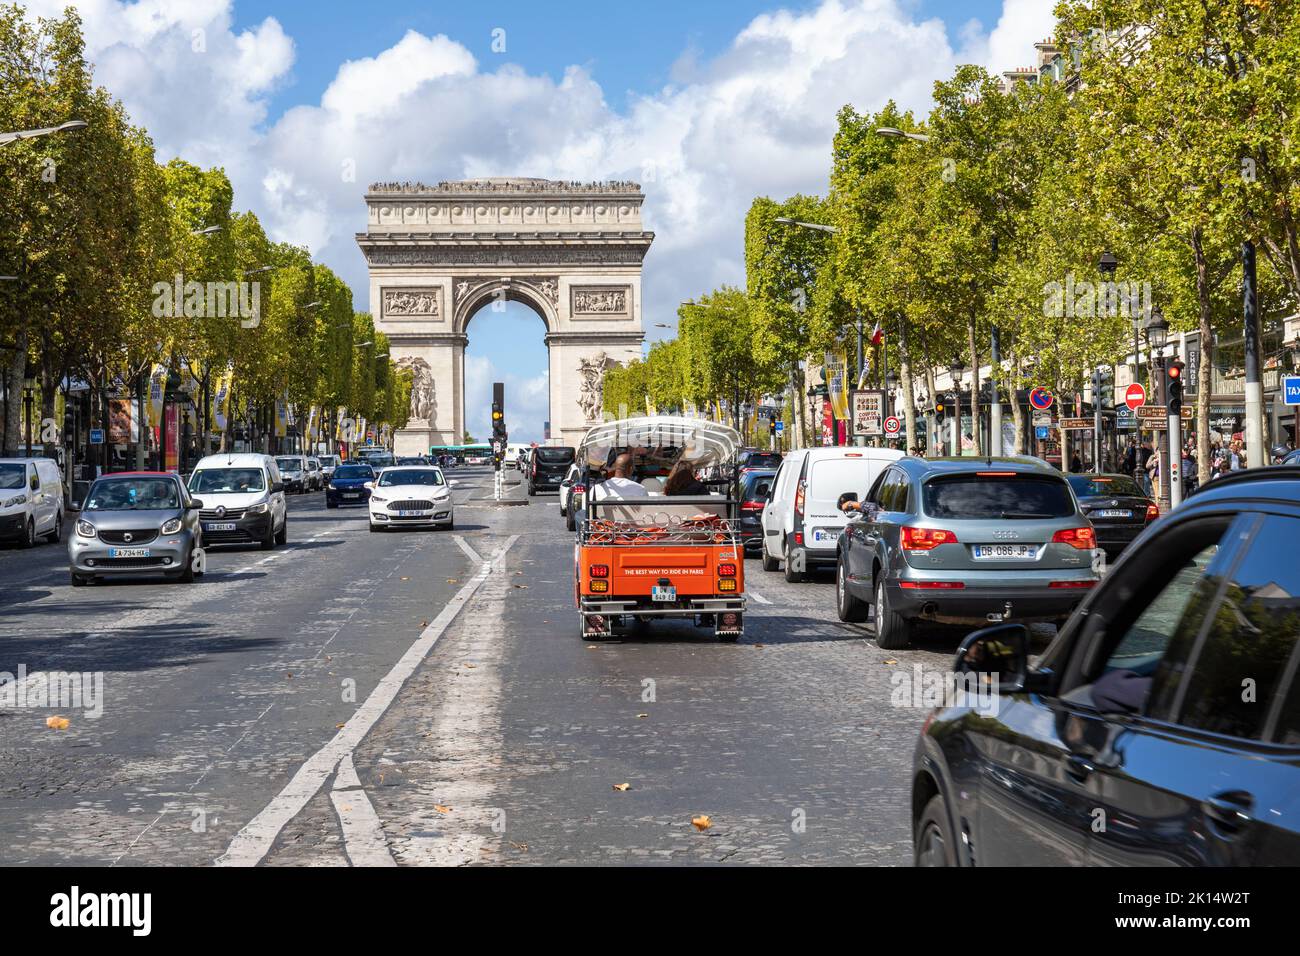 Famoso punto de referencia, el Arco del Triunfo, en el extremo occidental de los Campos Elíseos. Red TukTuk y coches cerca del arco triunfal, París, Francia Foto de stock